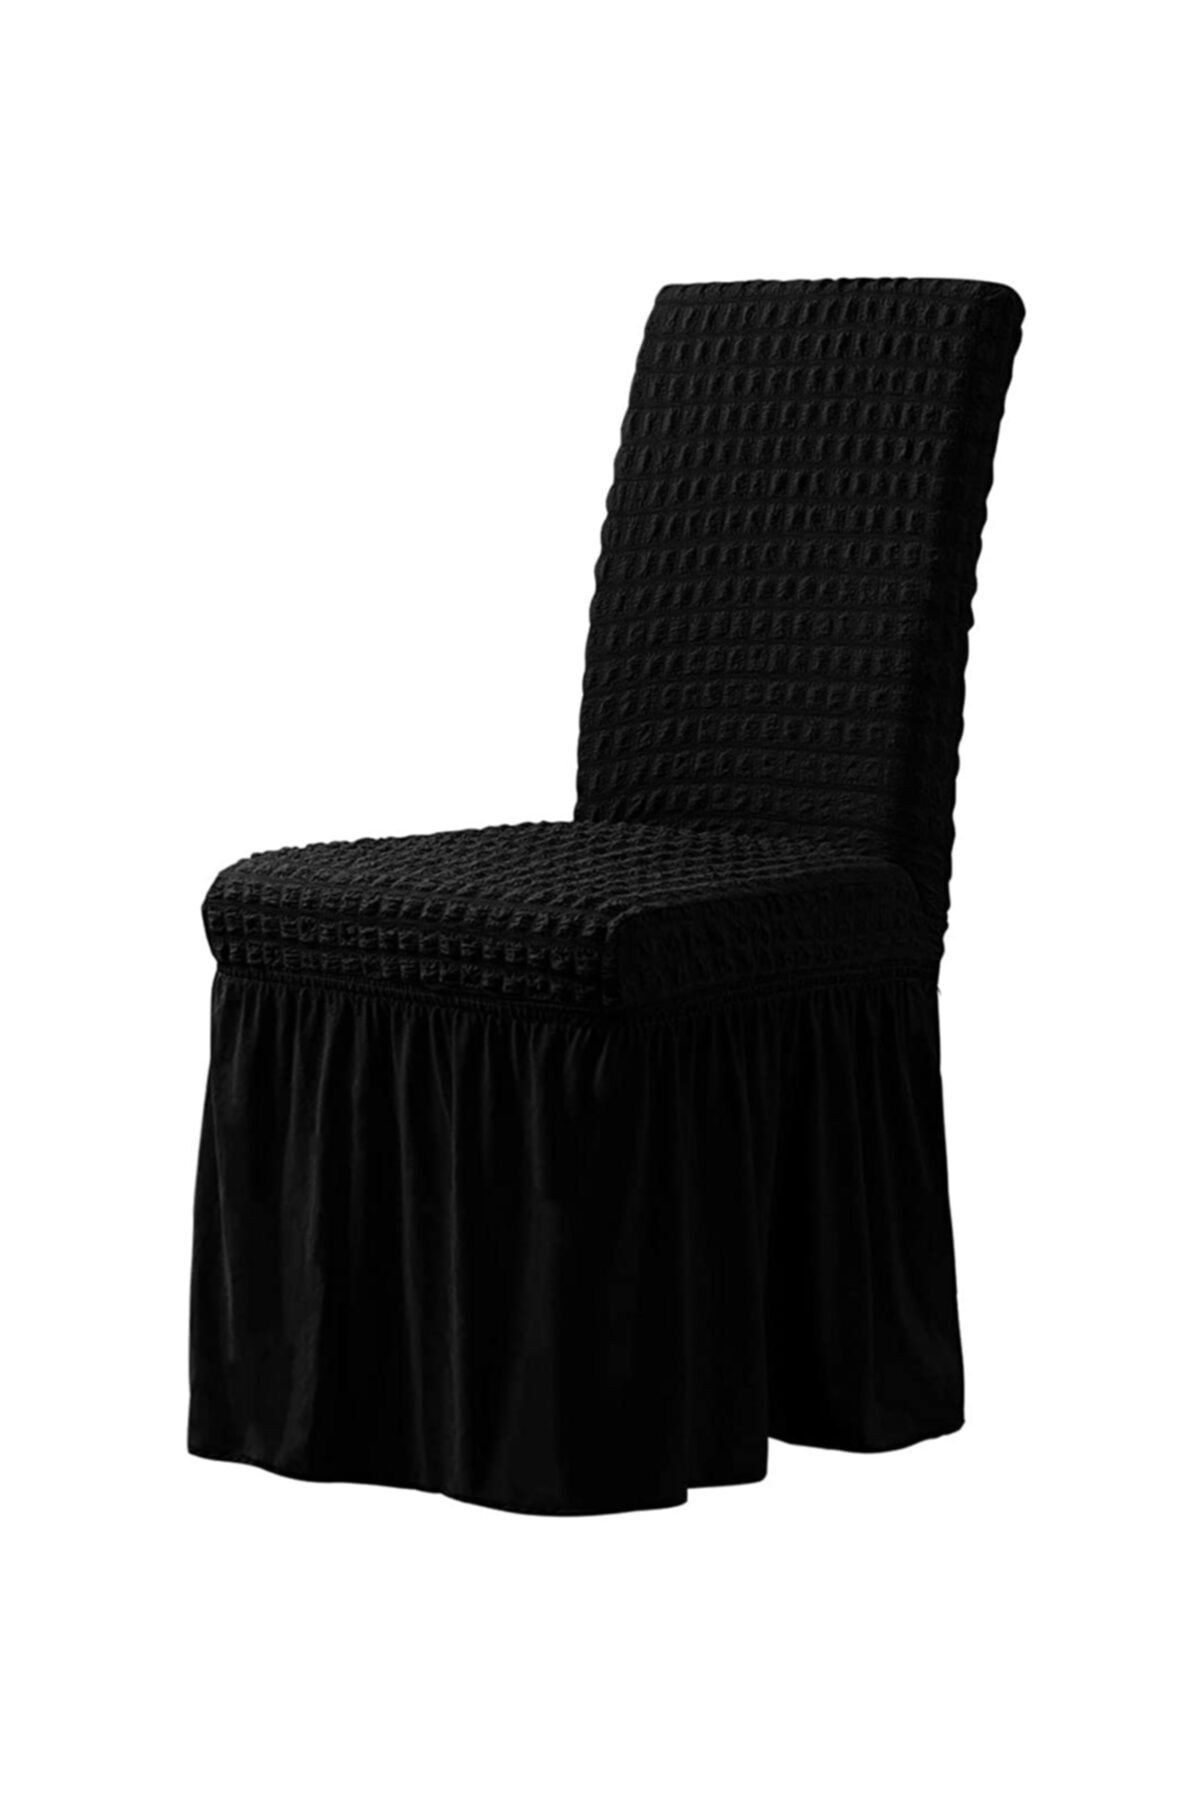 elgeyar Bürümcük Sandalye Kılıfı,sandalye Örtüsü Etekli Lastıkli Standart